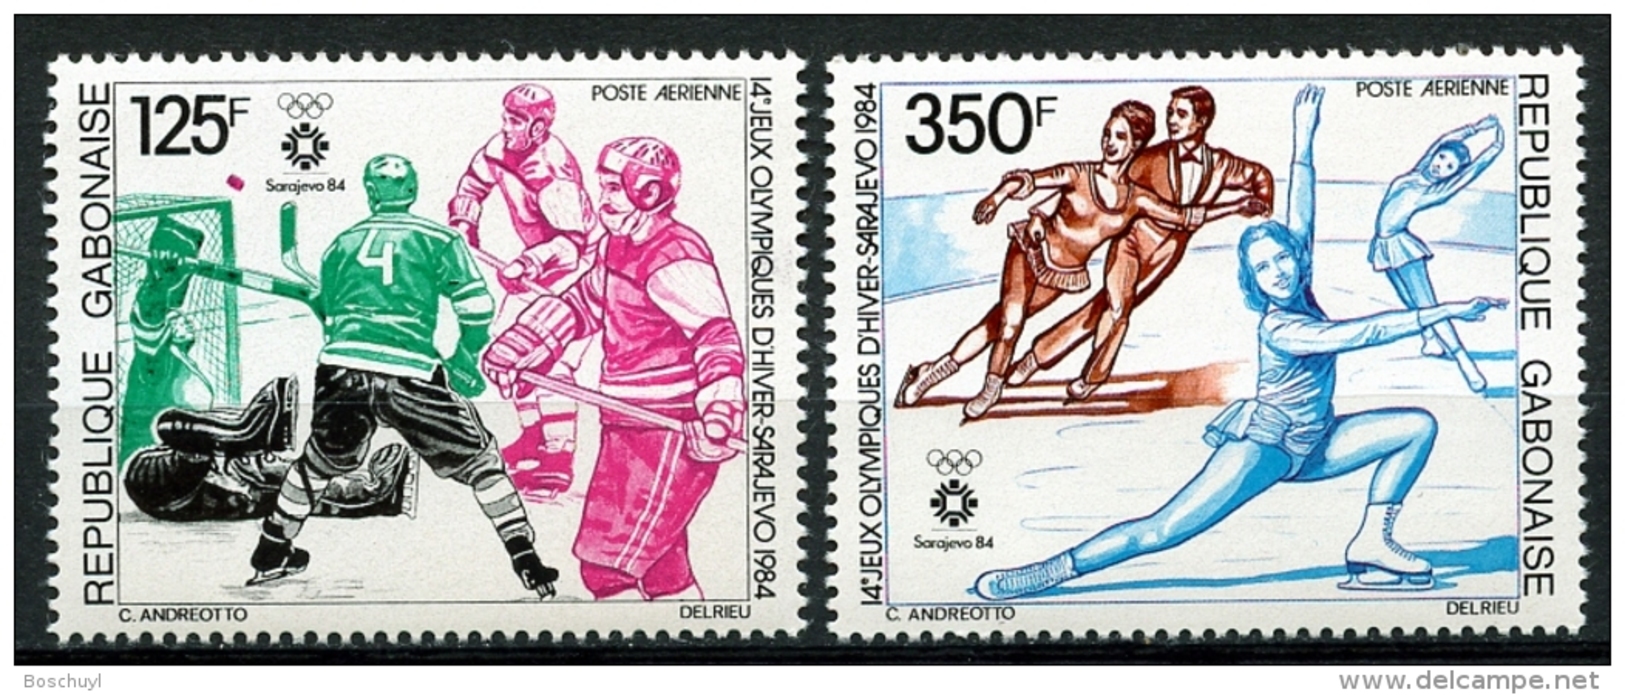 Gabon, 1984, Olympic Winter Games Sarajevo, Ice Hockey, Skating, MNH, Michel 891-892 - Gabun (1960-...)